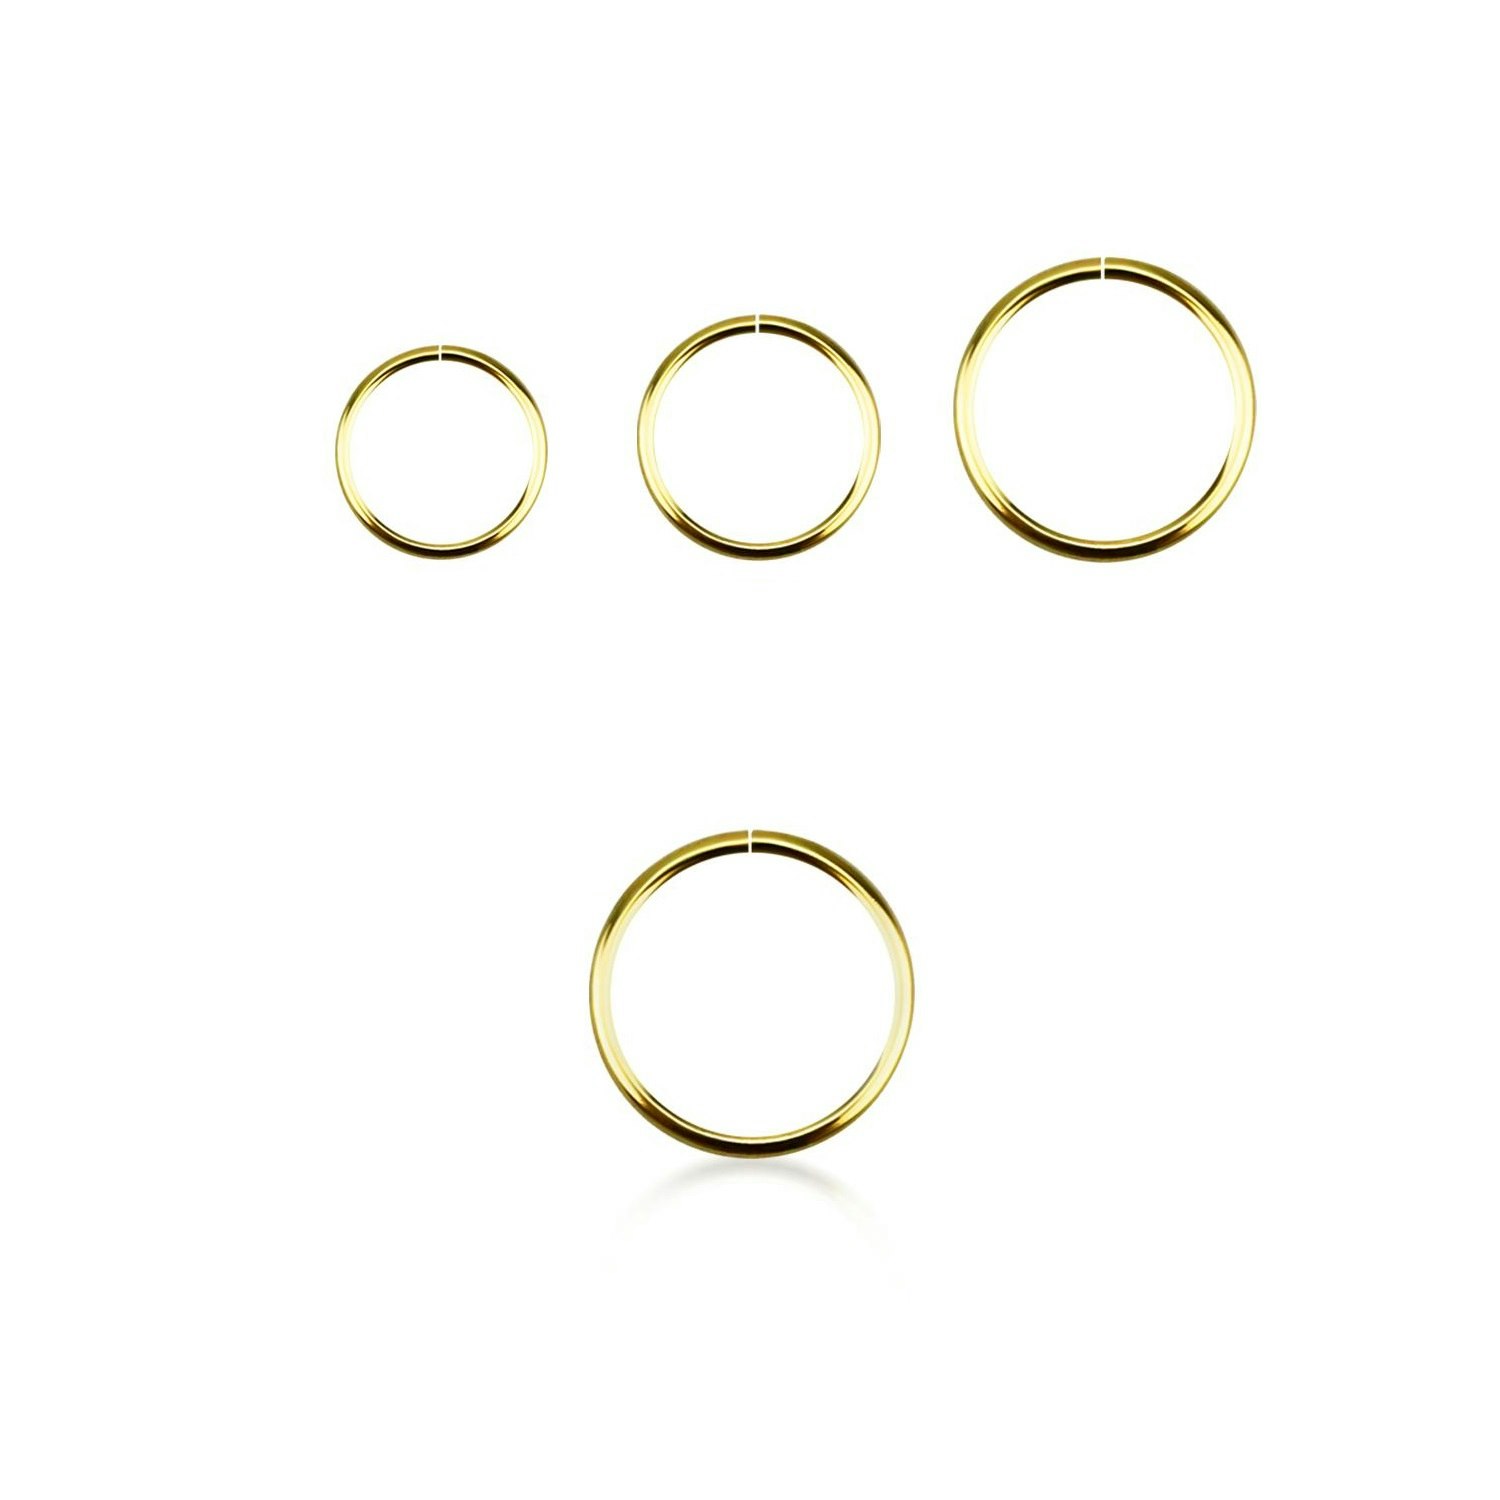 Näsring / sömlös ring 0.6mm i äkta 14 karat guld